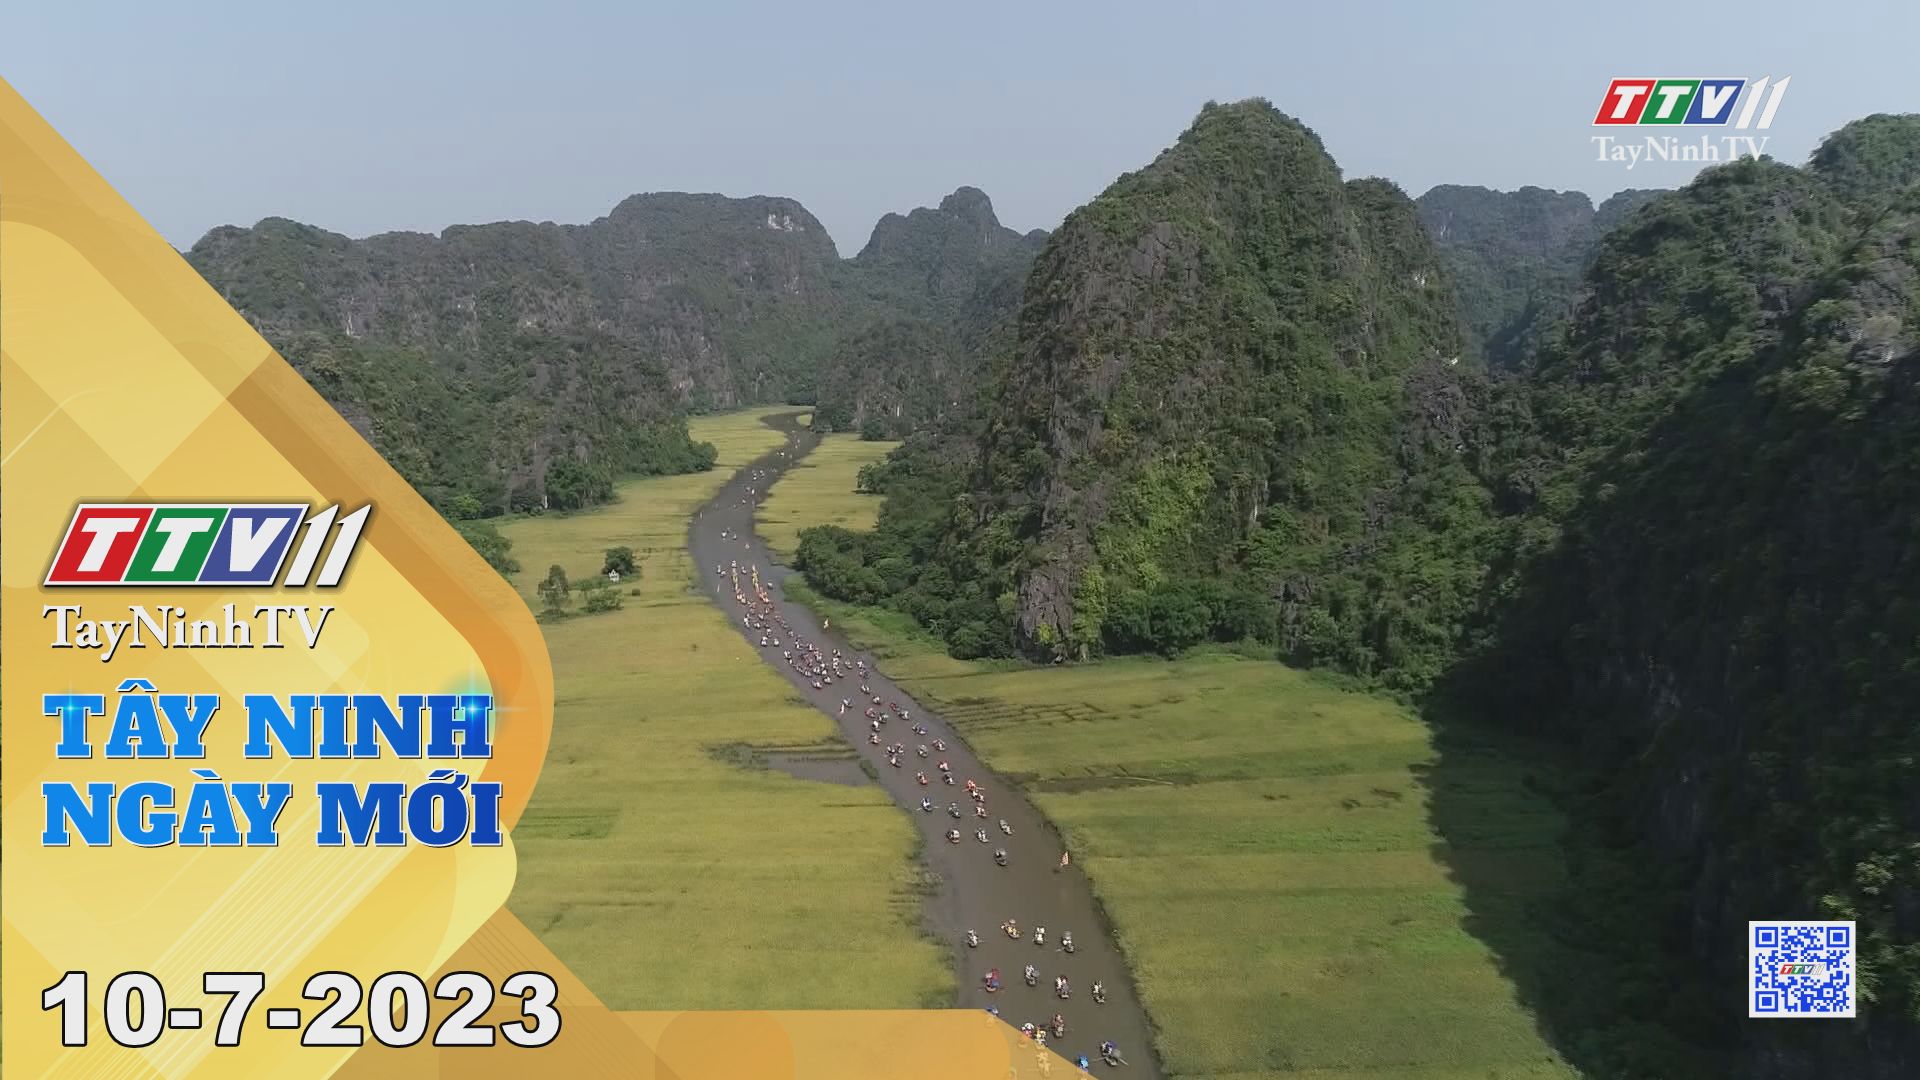 Tây Ninh ngày mới 10-7-2023 | Tin tức hôm nay | TayNinhTV